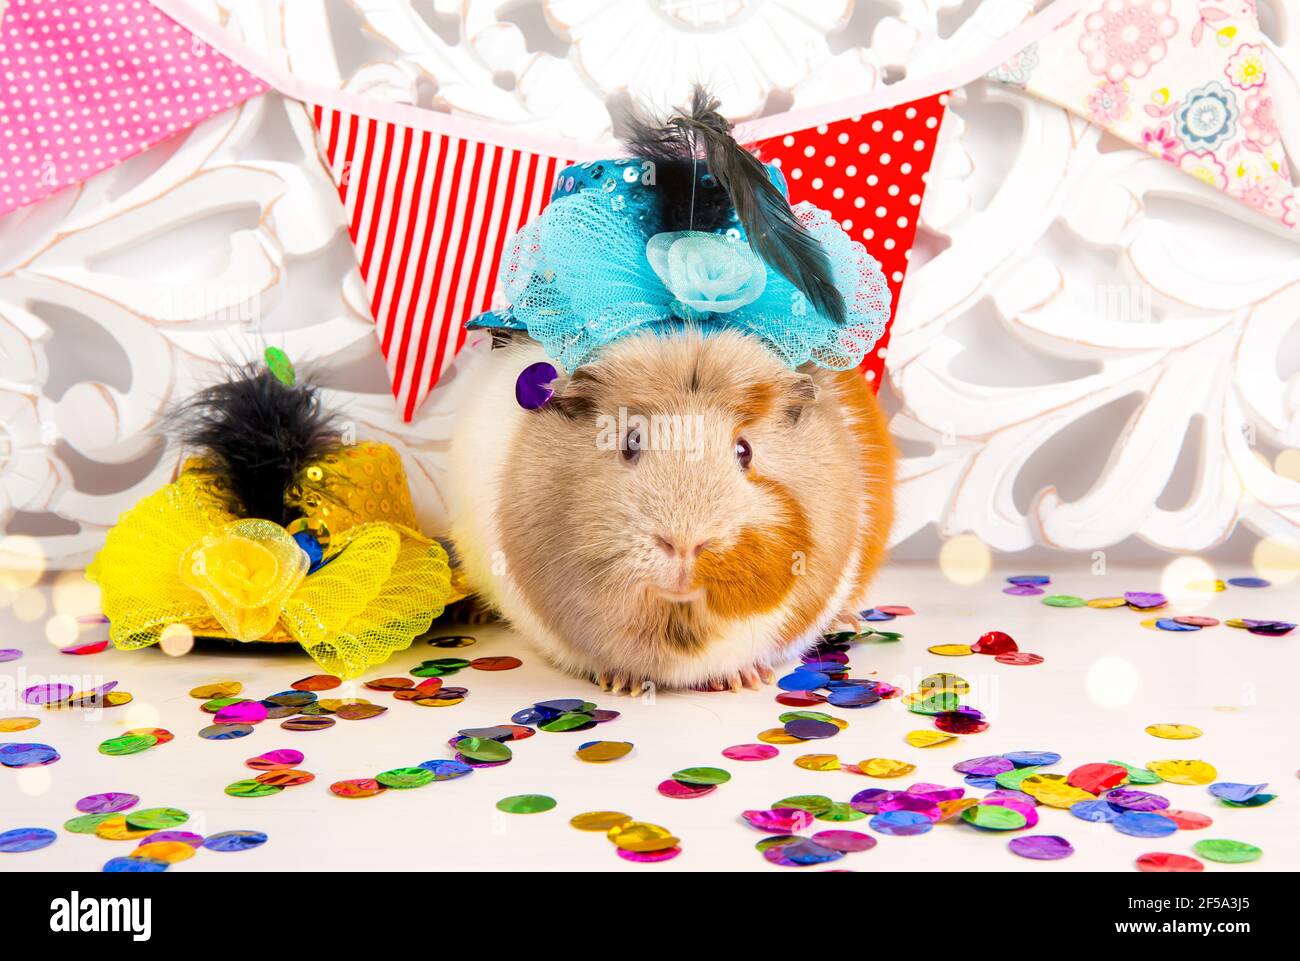 Fun festliche Meerschweinchen mit Party Hut, Party-Fahnen und Konfetti fallen. Tier Geburtstag Hintergrund Konzept. Stockfoto